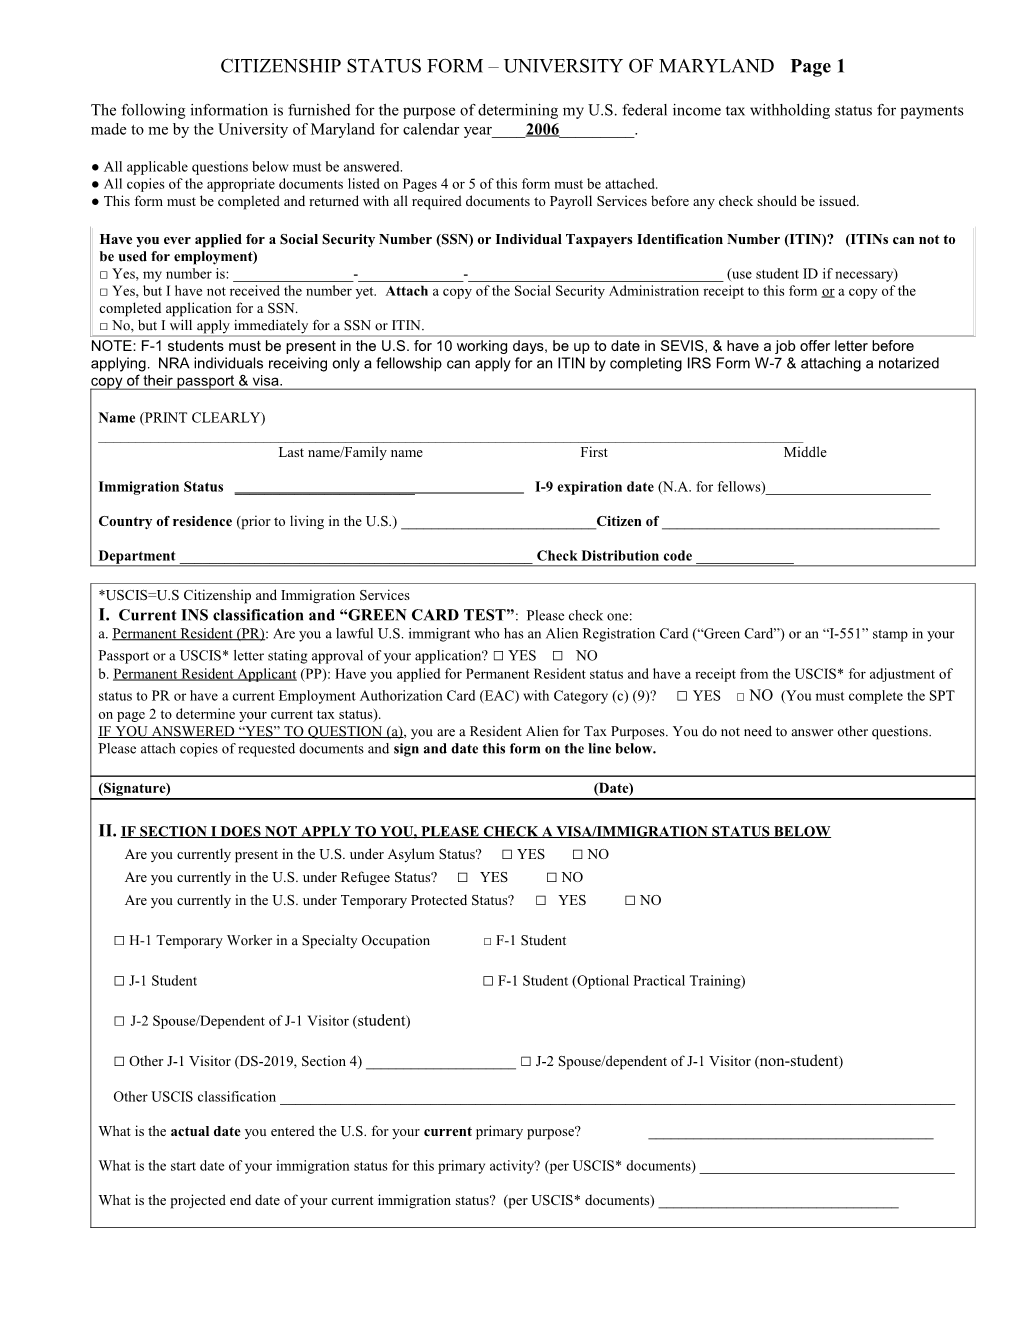 Citizenship Status Form University of Maryland